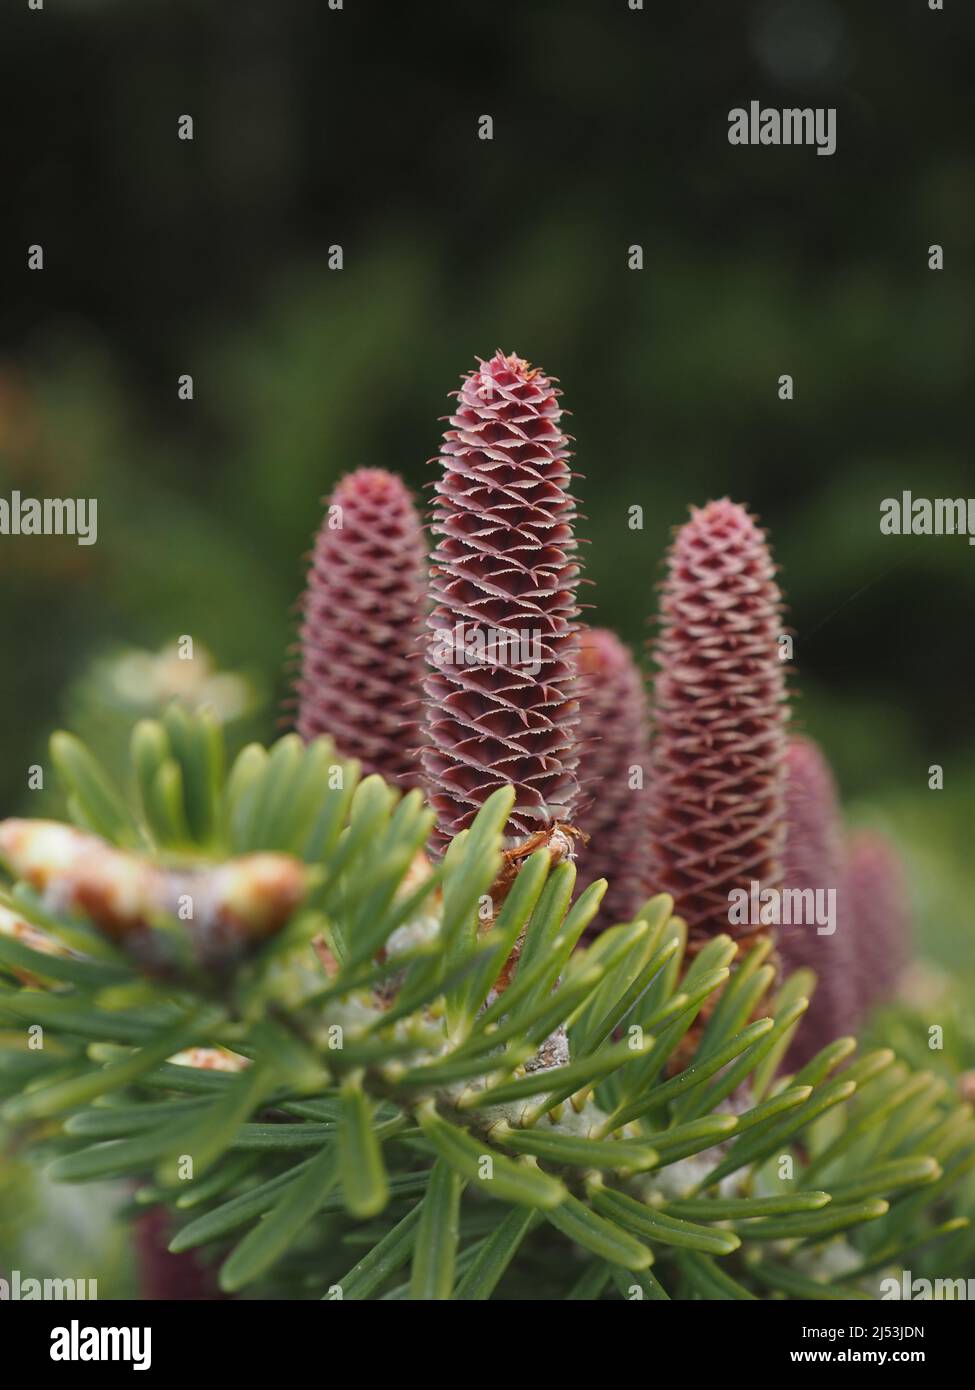 Korea fir, Abies koreana, pollinating female cones, close up, Stock Photo